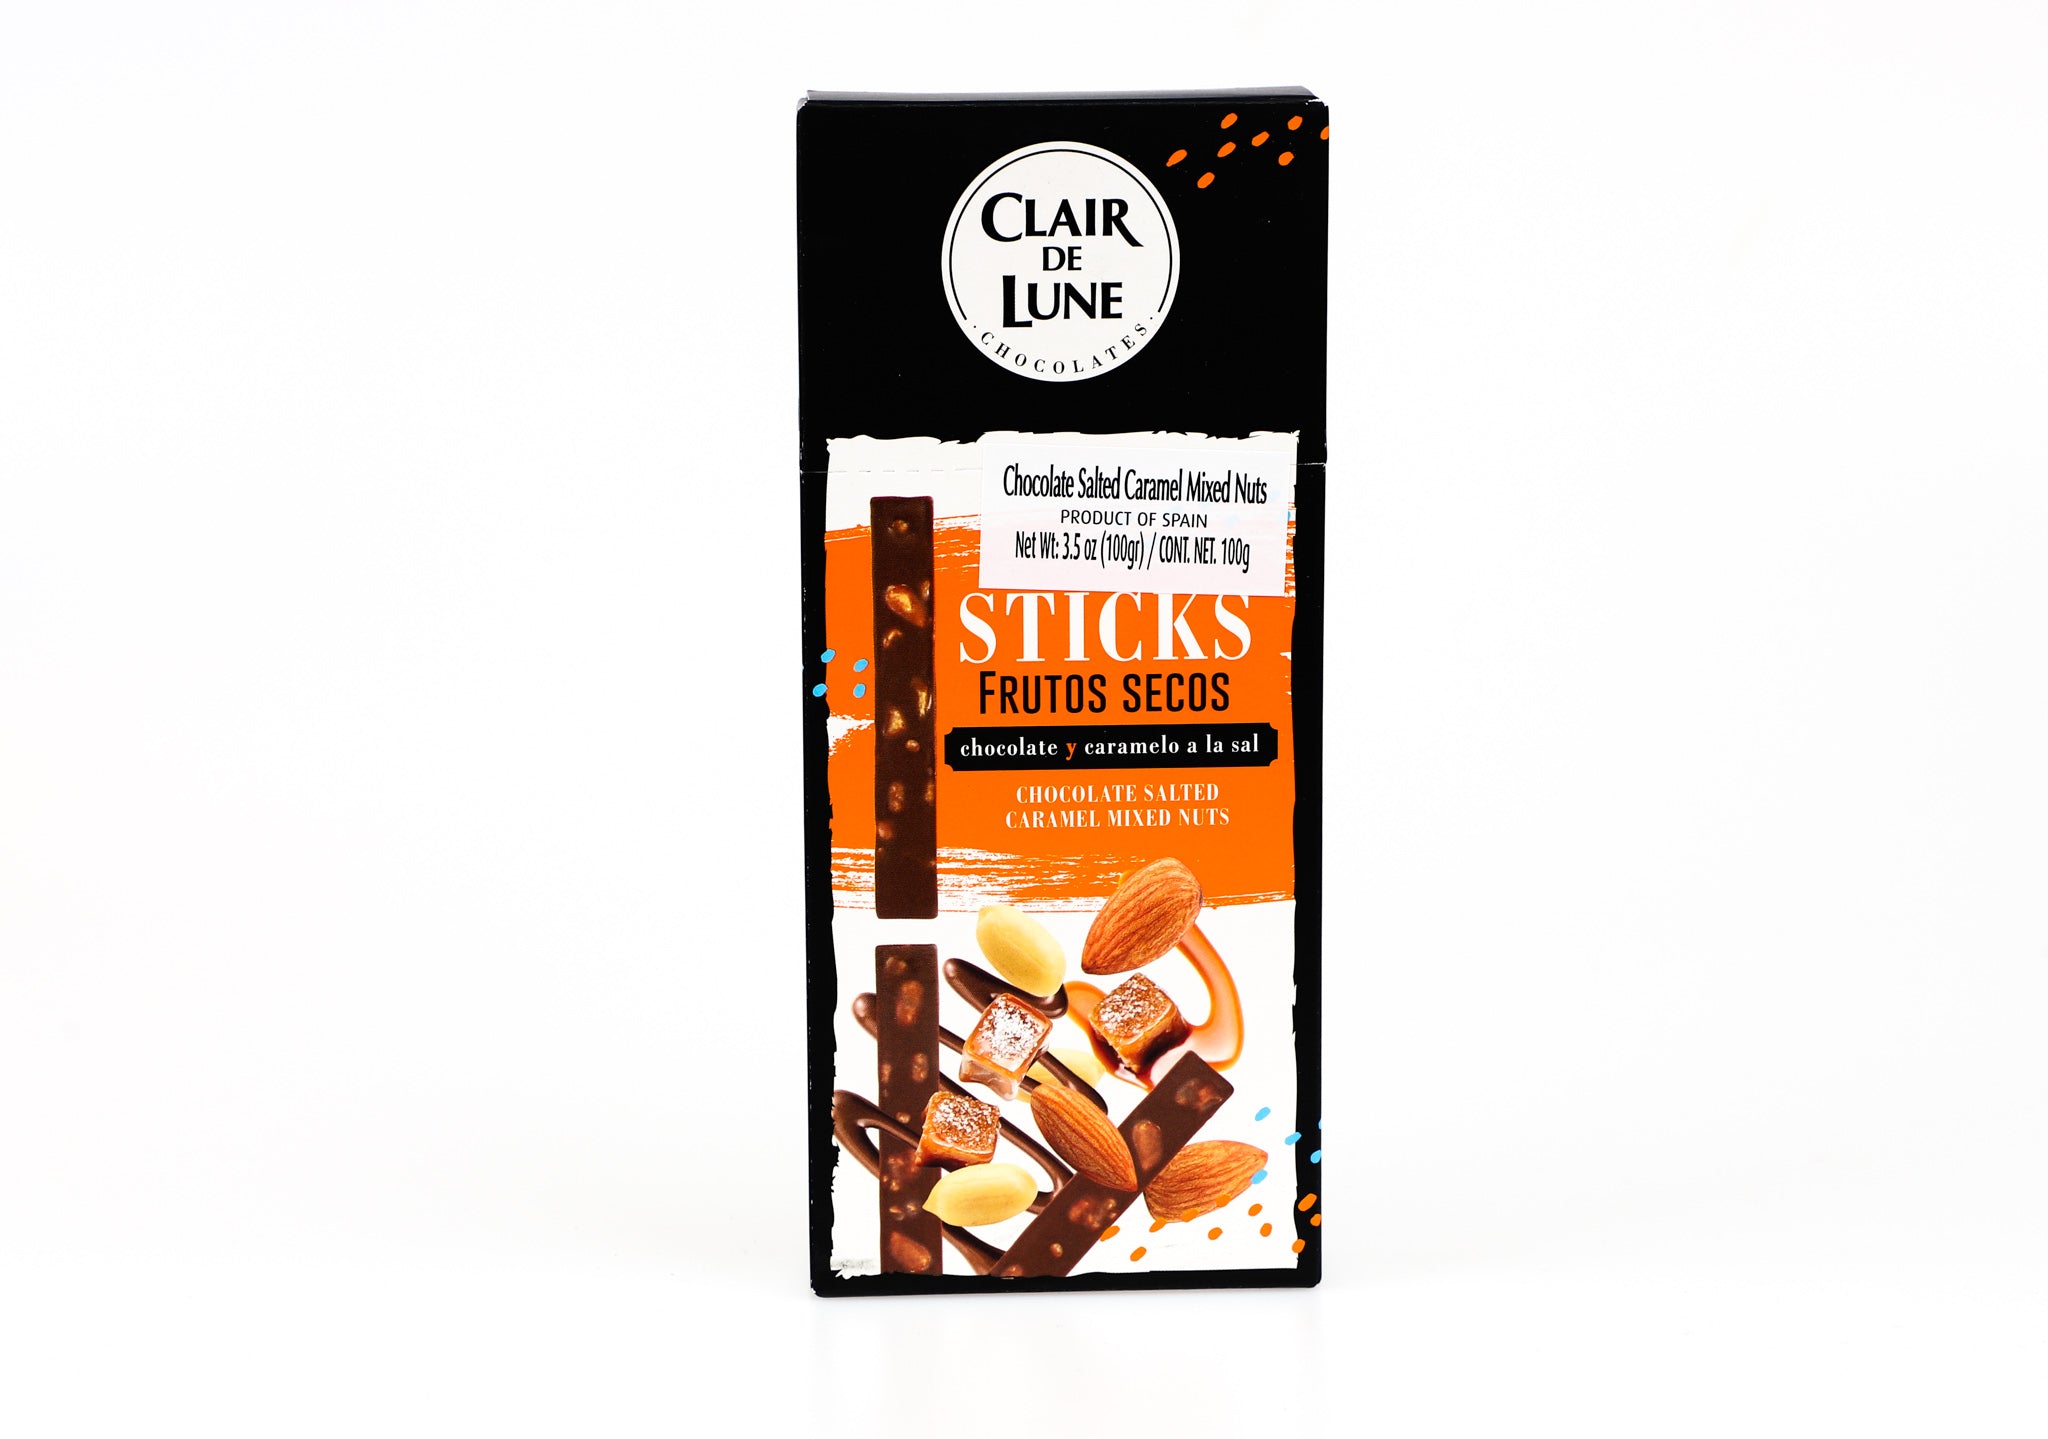 Clair de Lune Chocolate Salted Caramel Sticks